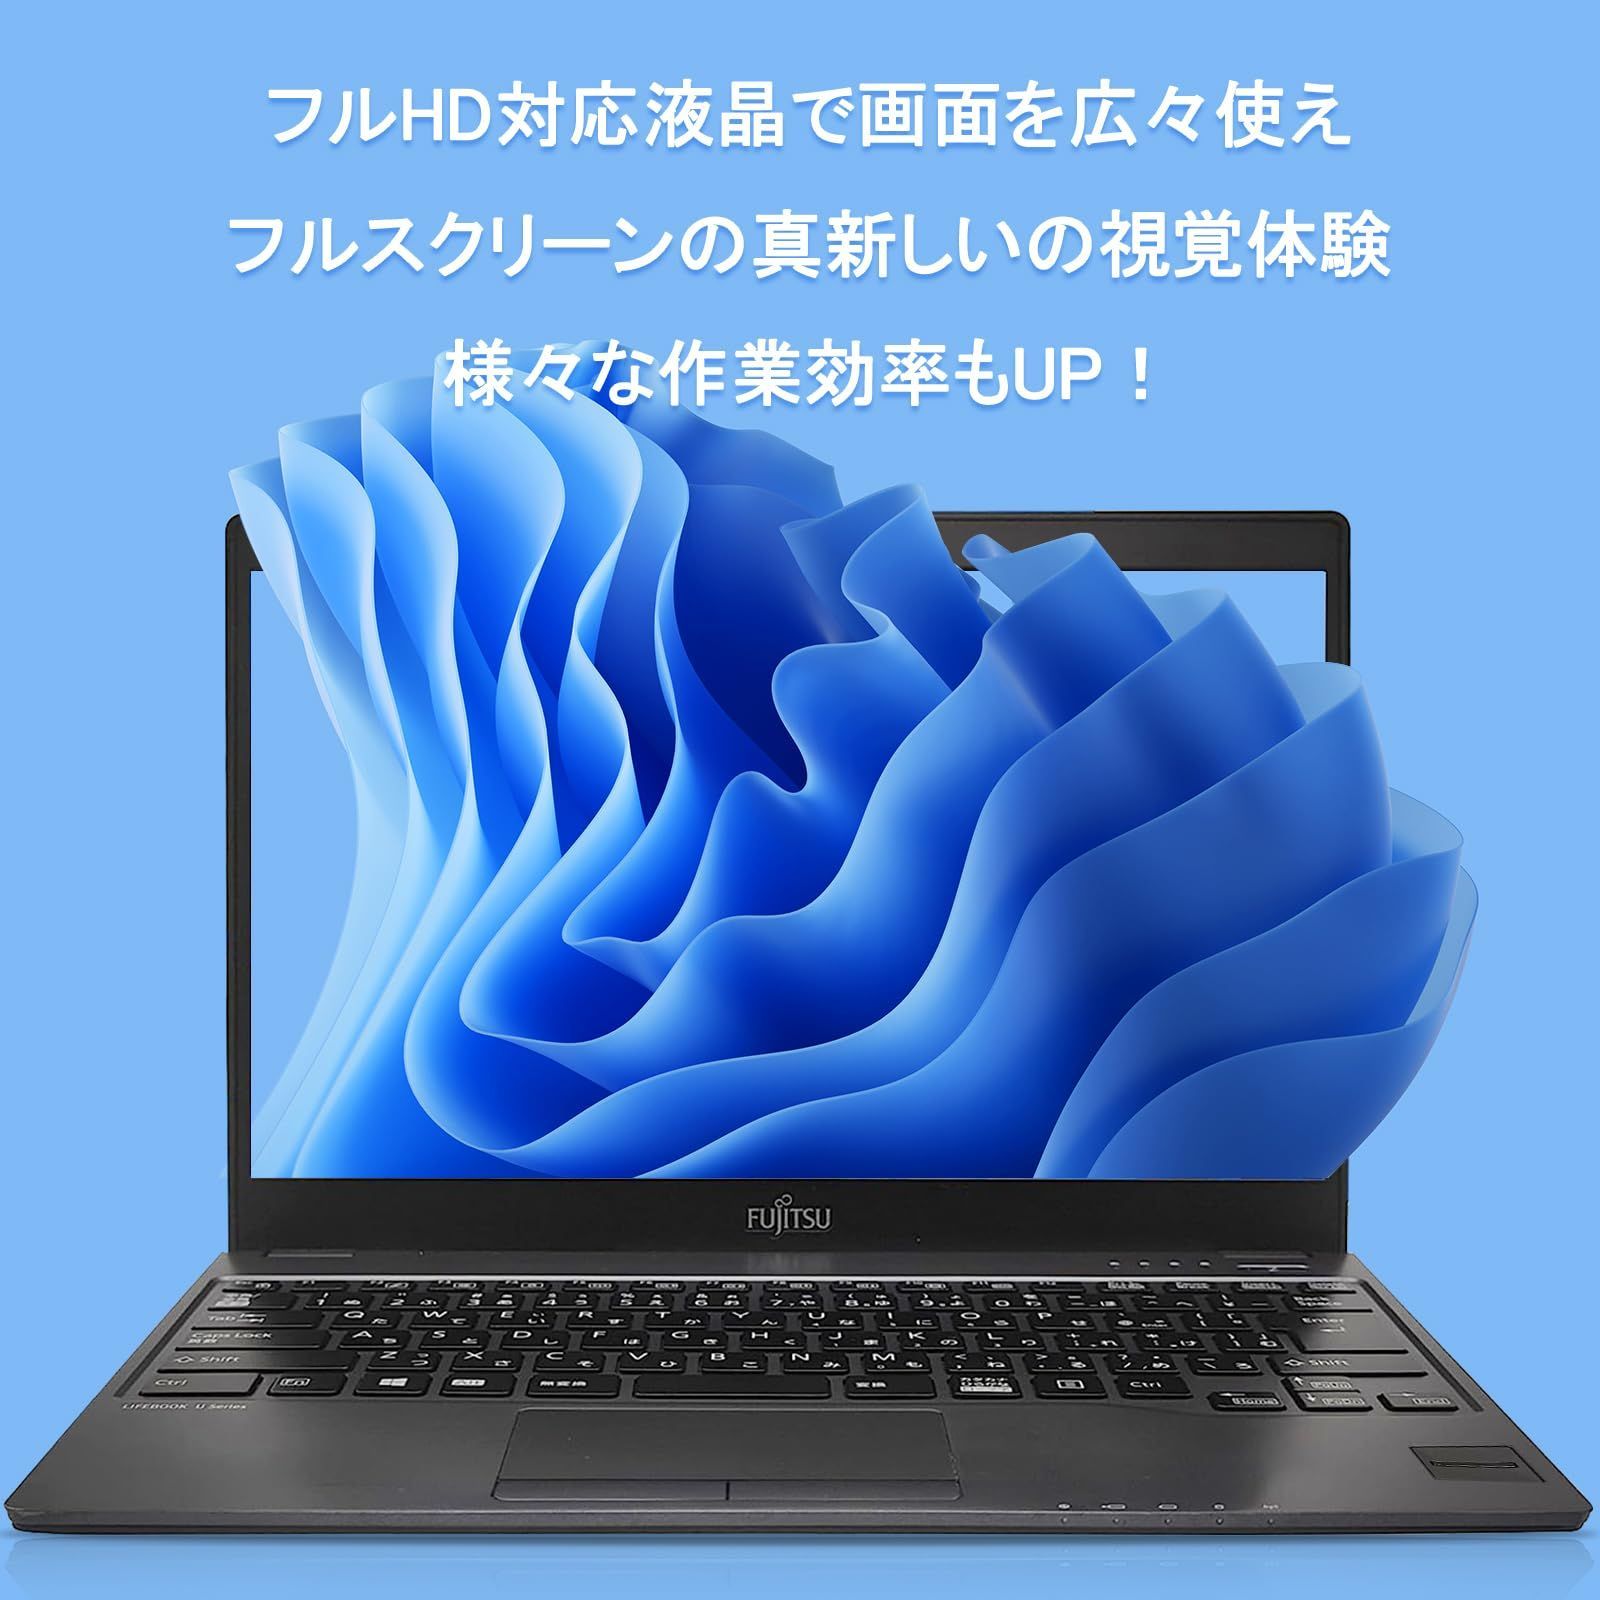 人気商品】ノートパソコン FUJITSU 富士通 LIFEBOOK U937 薄型 軽量pc